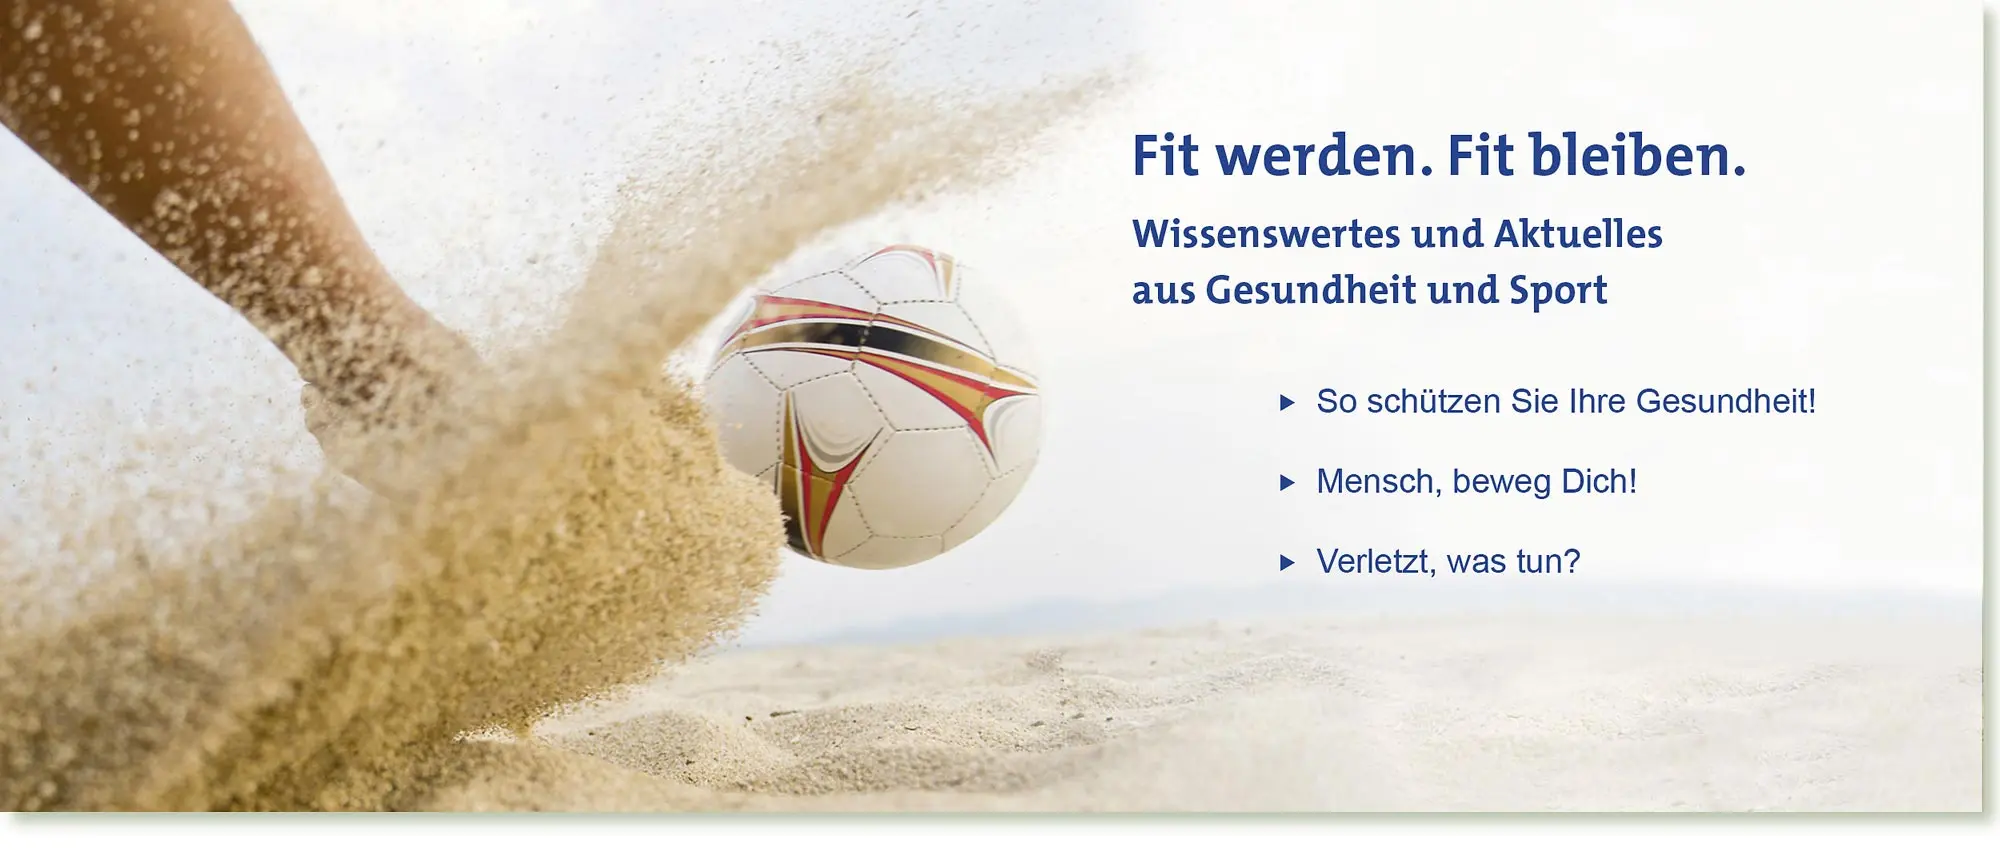 HeadImage | [formula] Müller-Wohlfahrt Gesundheit und Sport im Sommer